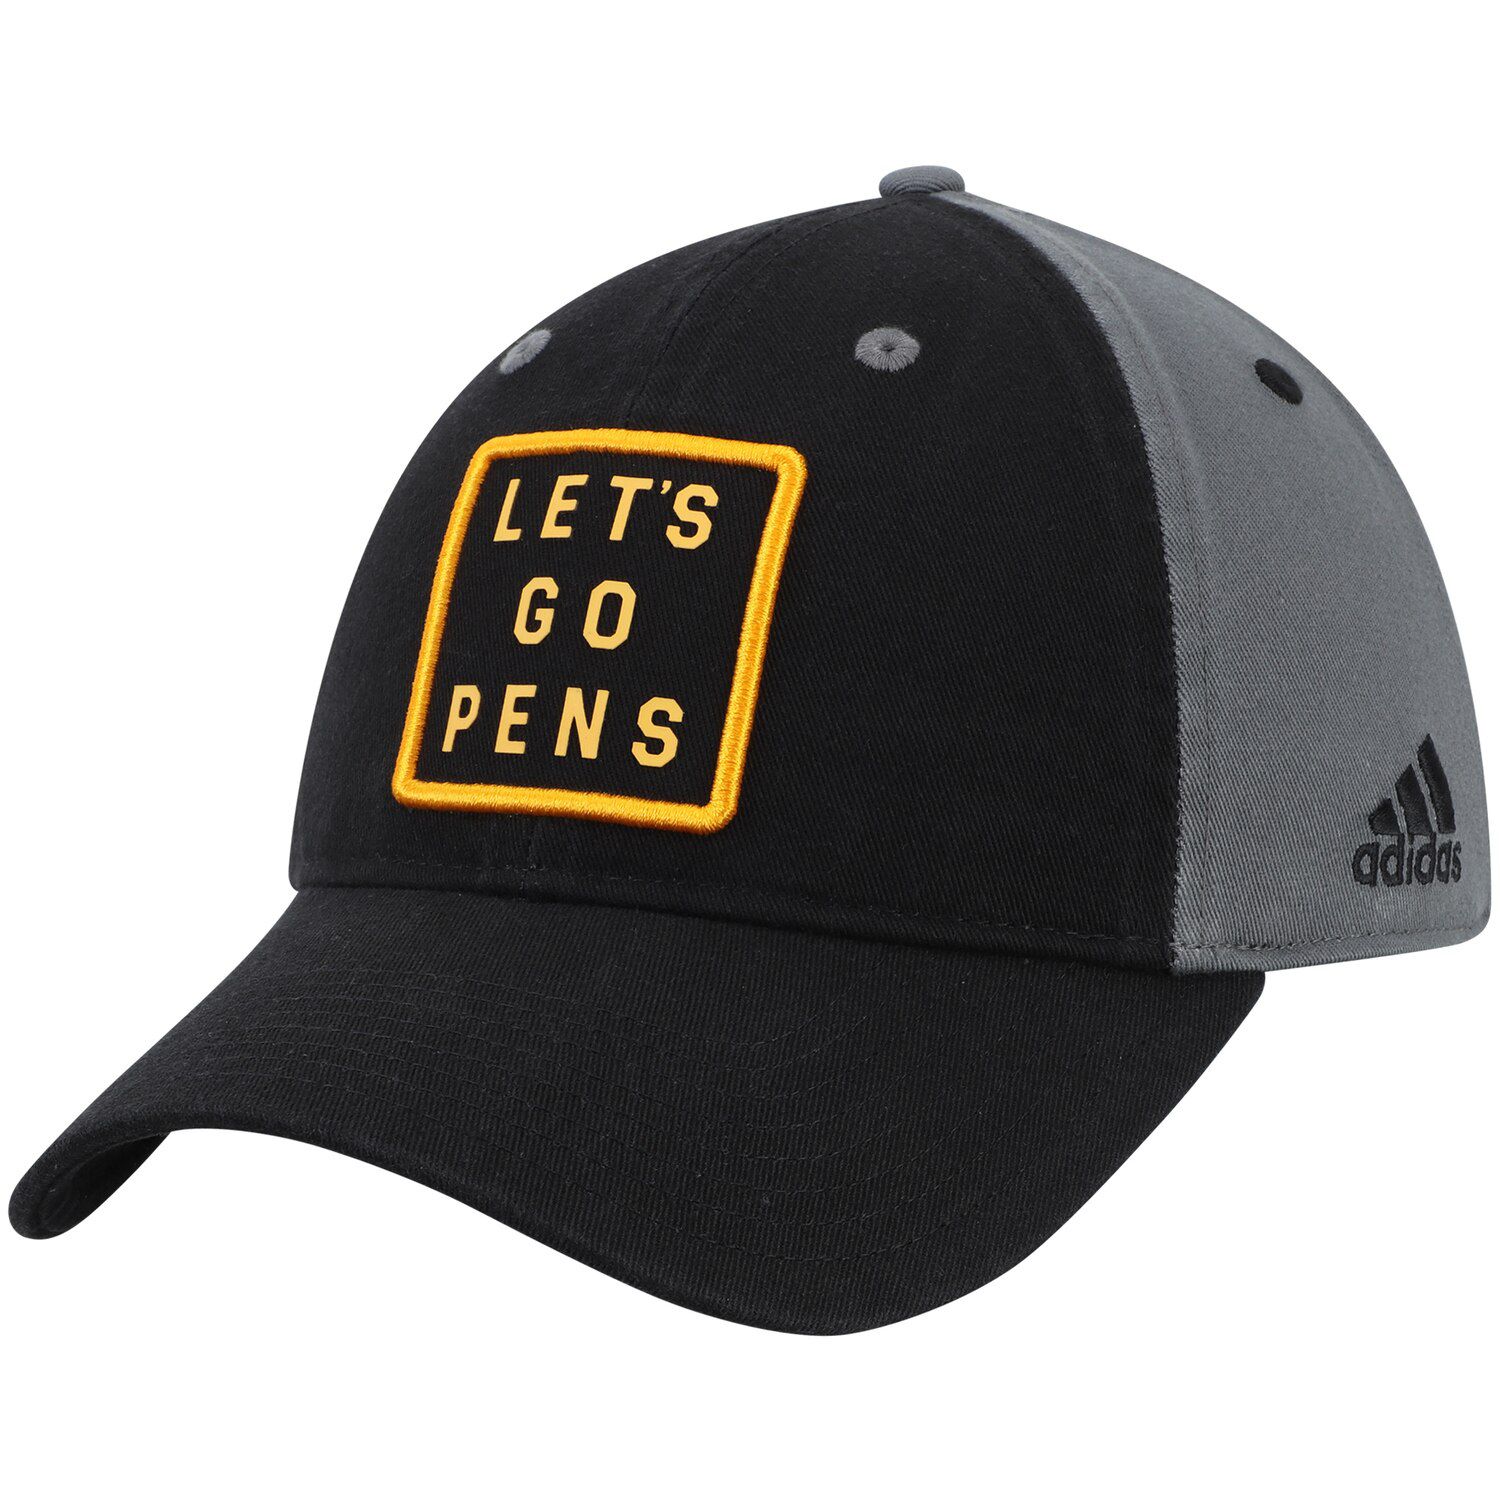 Team Slogan Adjustable Hat